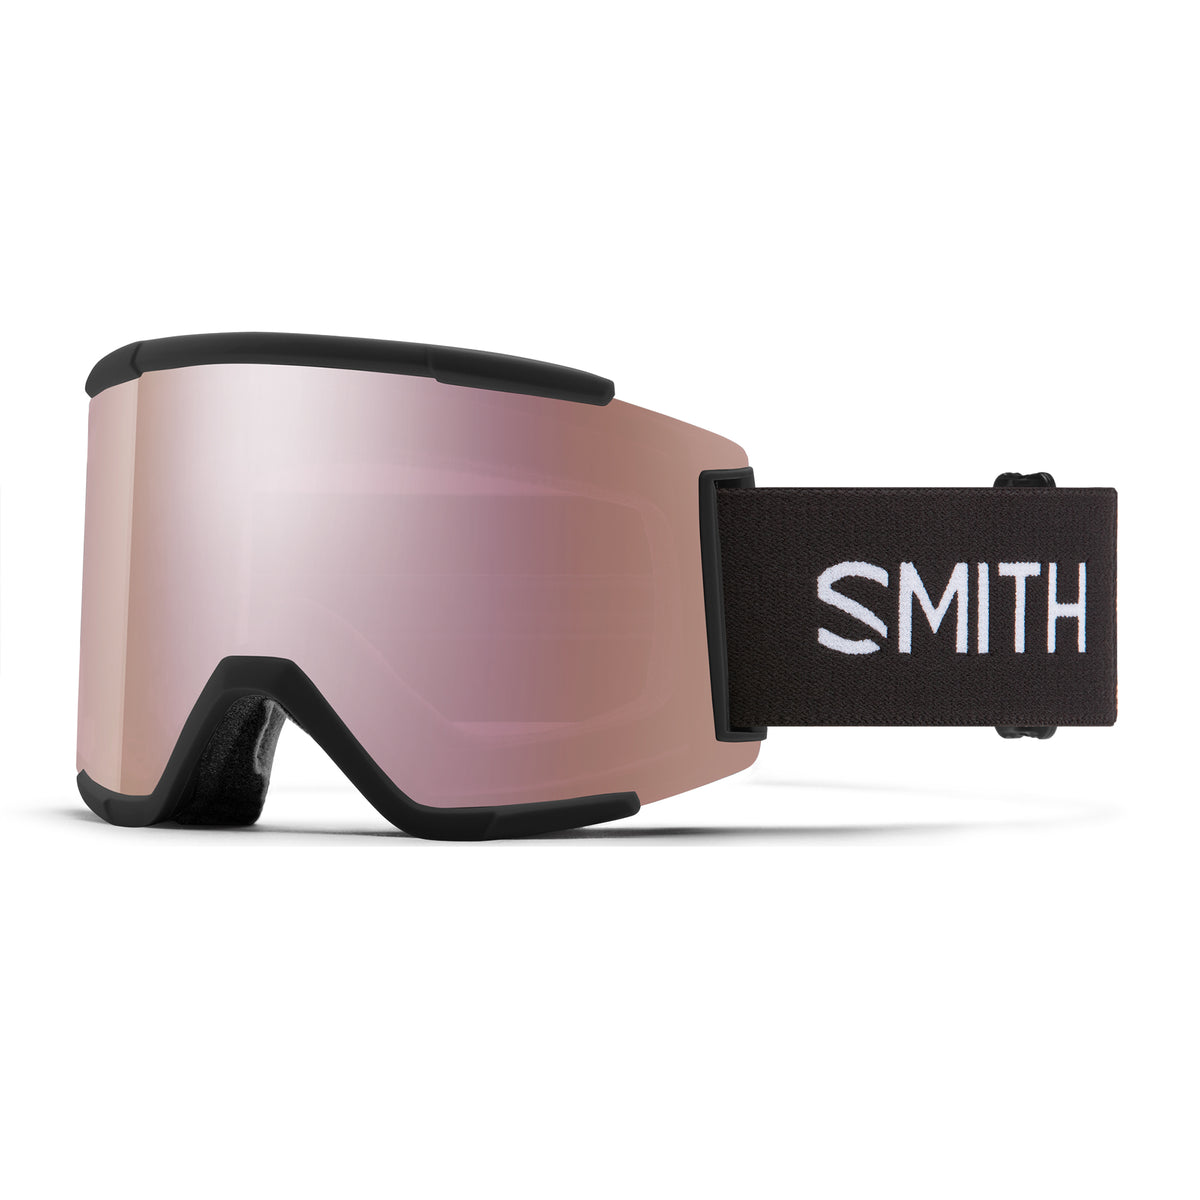 Smith SQUAD XL Goggles